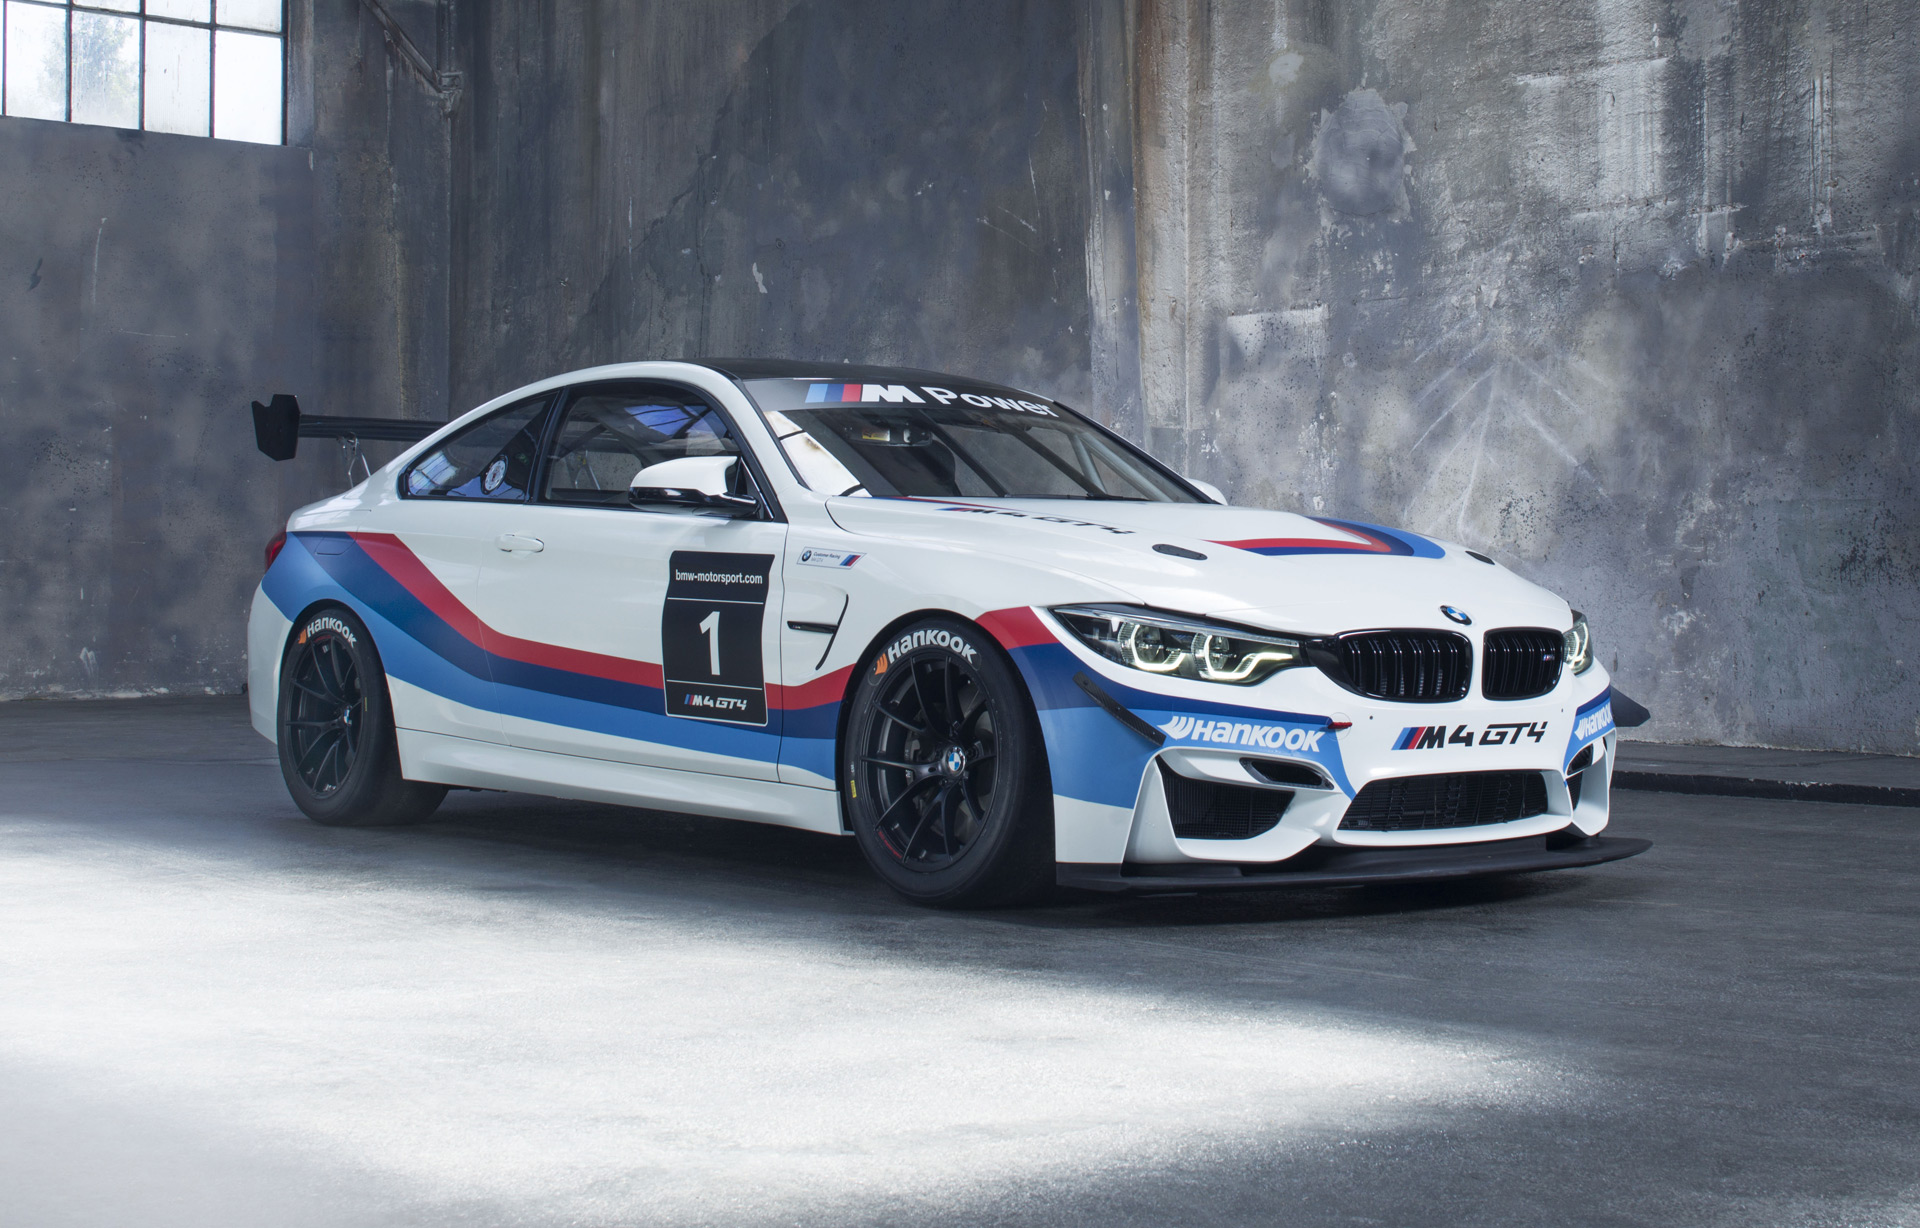 2018 BMW M4 GT4 ready to race